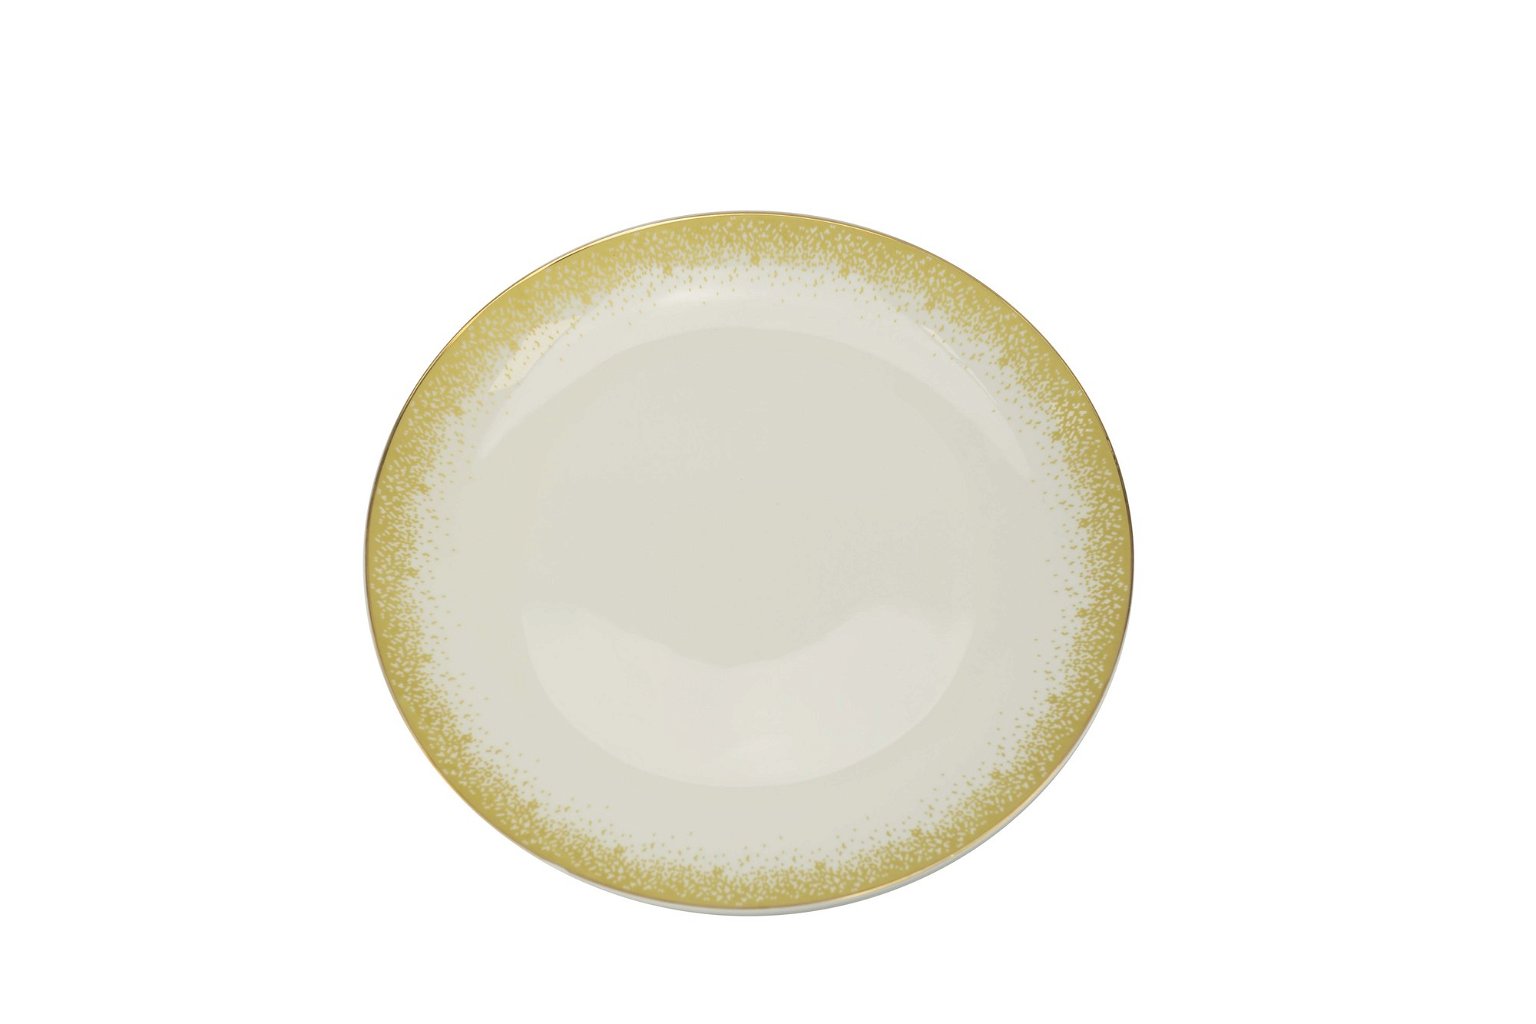 Pietų lėkštė DINA, balta su aukso spalvos kraštais, ø 27 cm